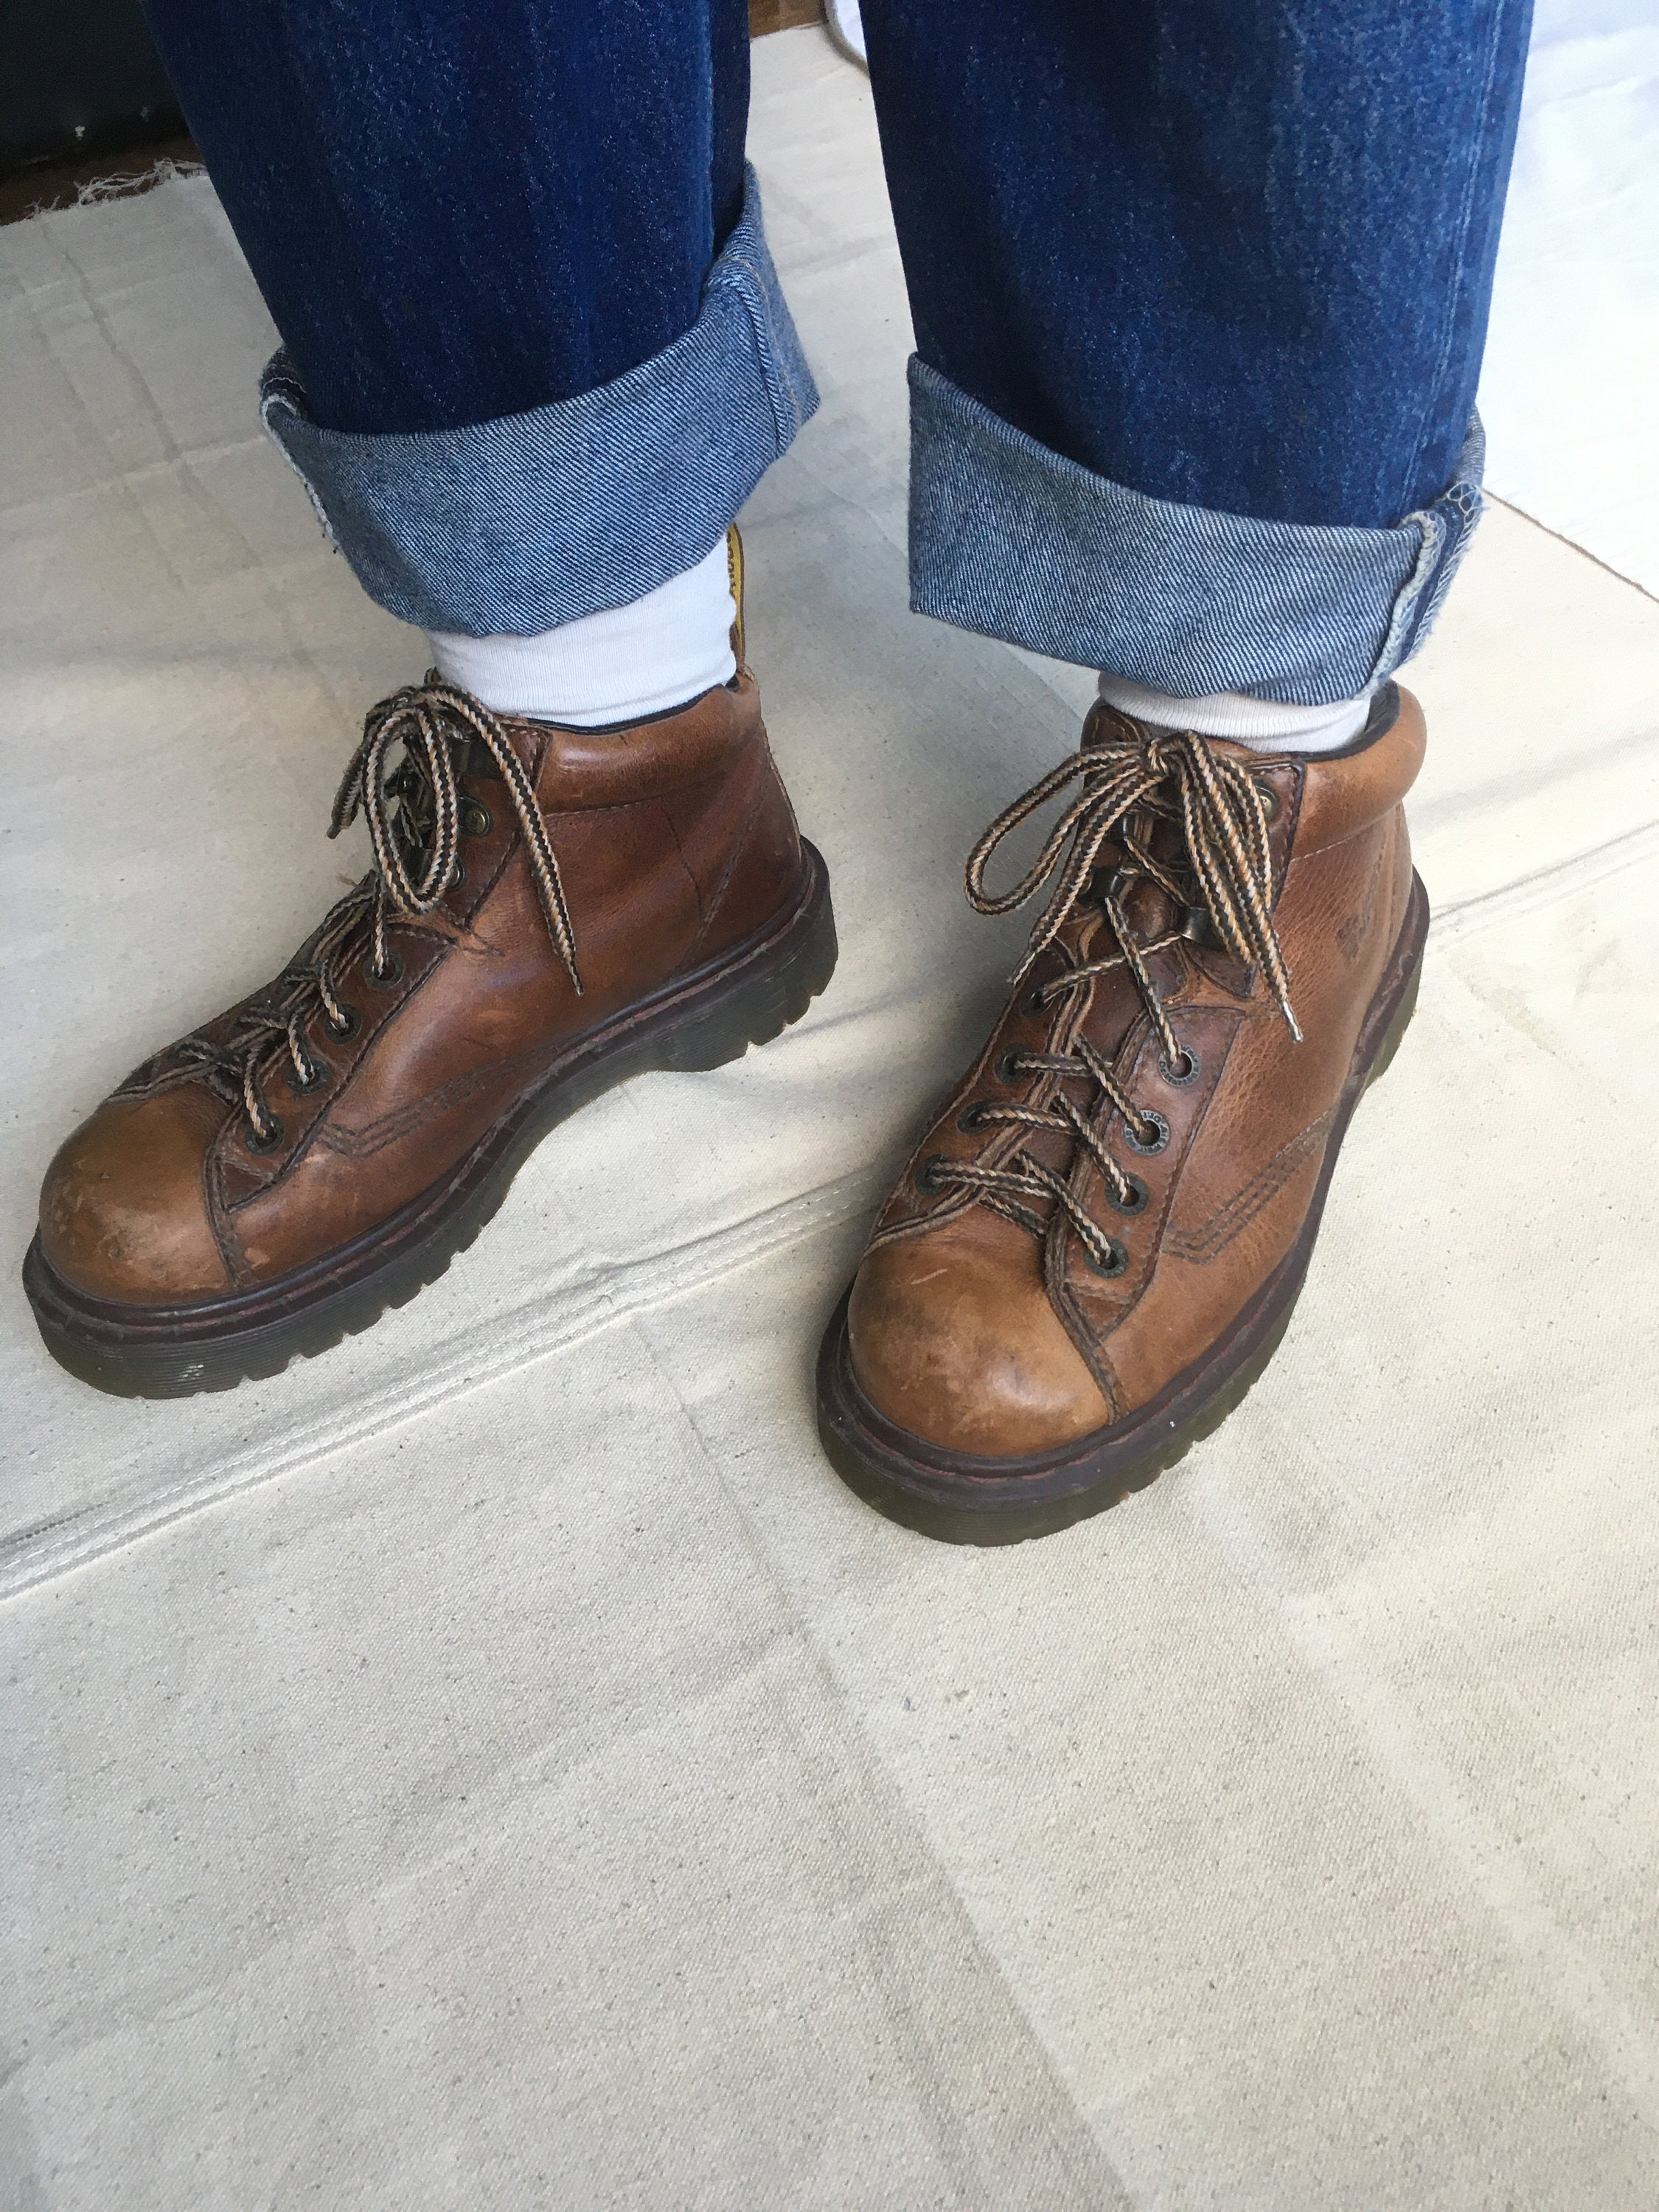 Zapatos Zapatos para hombre Botas Botas de trabajo y estilo militar Vintage Dr Martens Hombre US Size 10 8287 Air Wair Brown Leather Lace-Up Boots 